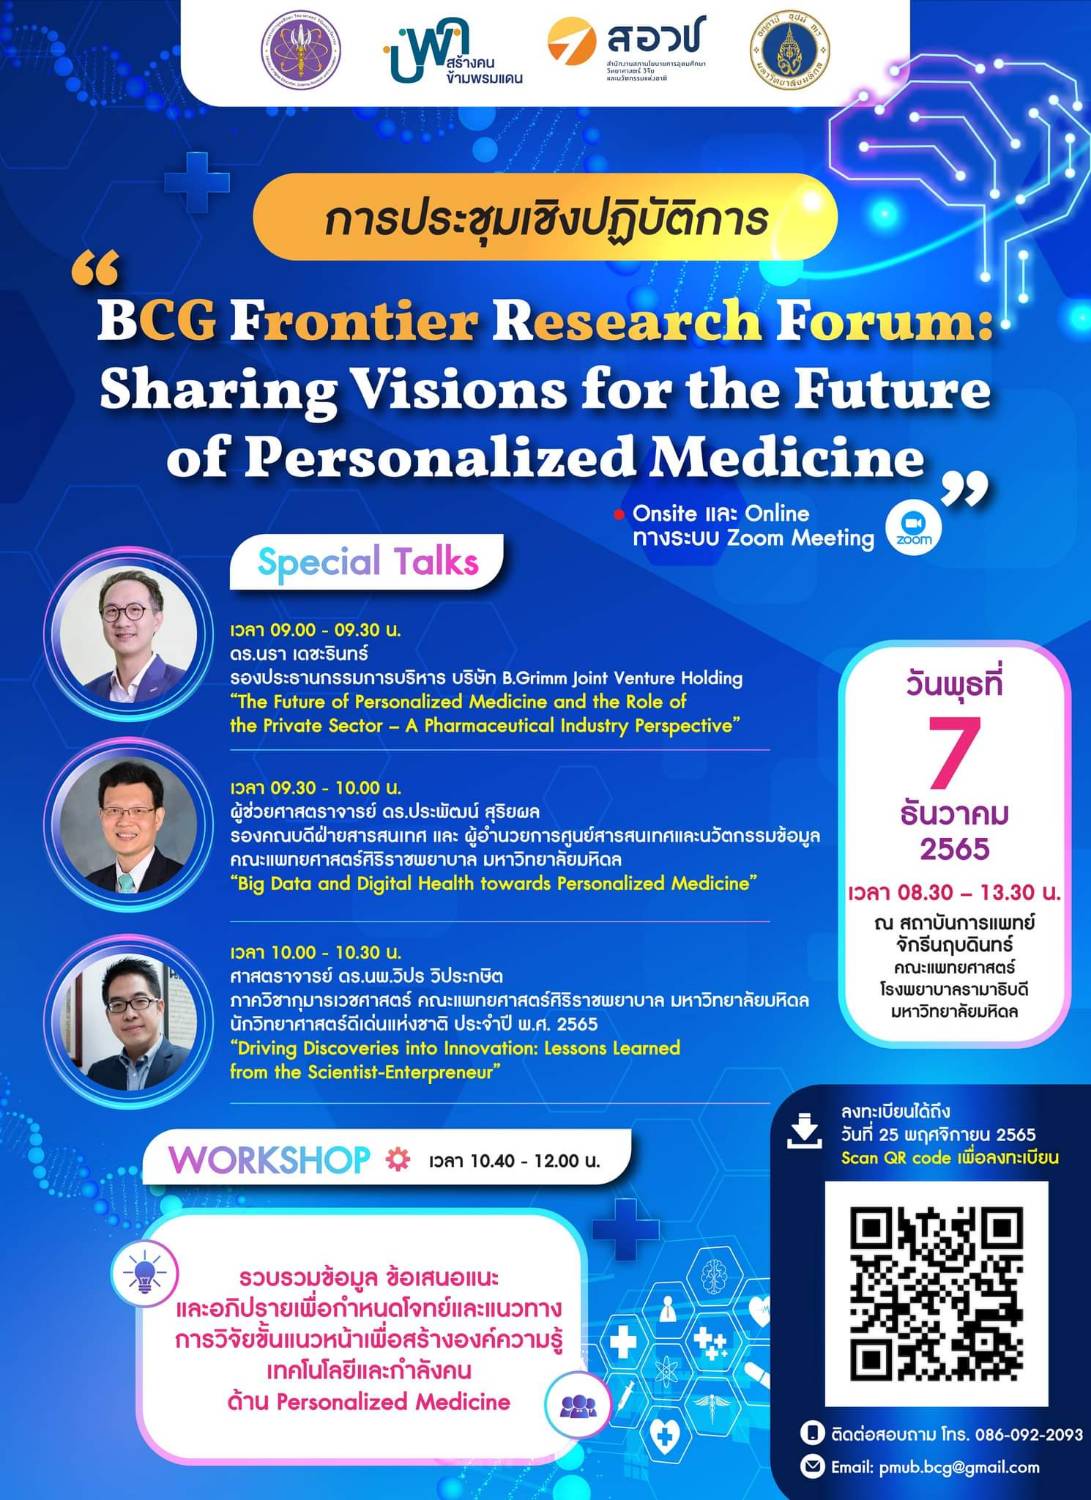 ขอเชิญผู้สนใจเข้าร่วมการประชุมเชิงปฏิบัติการ “BCG Frontier Research Forum: Sharing Visions for the Future of Personalized Medicine” 